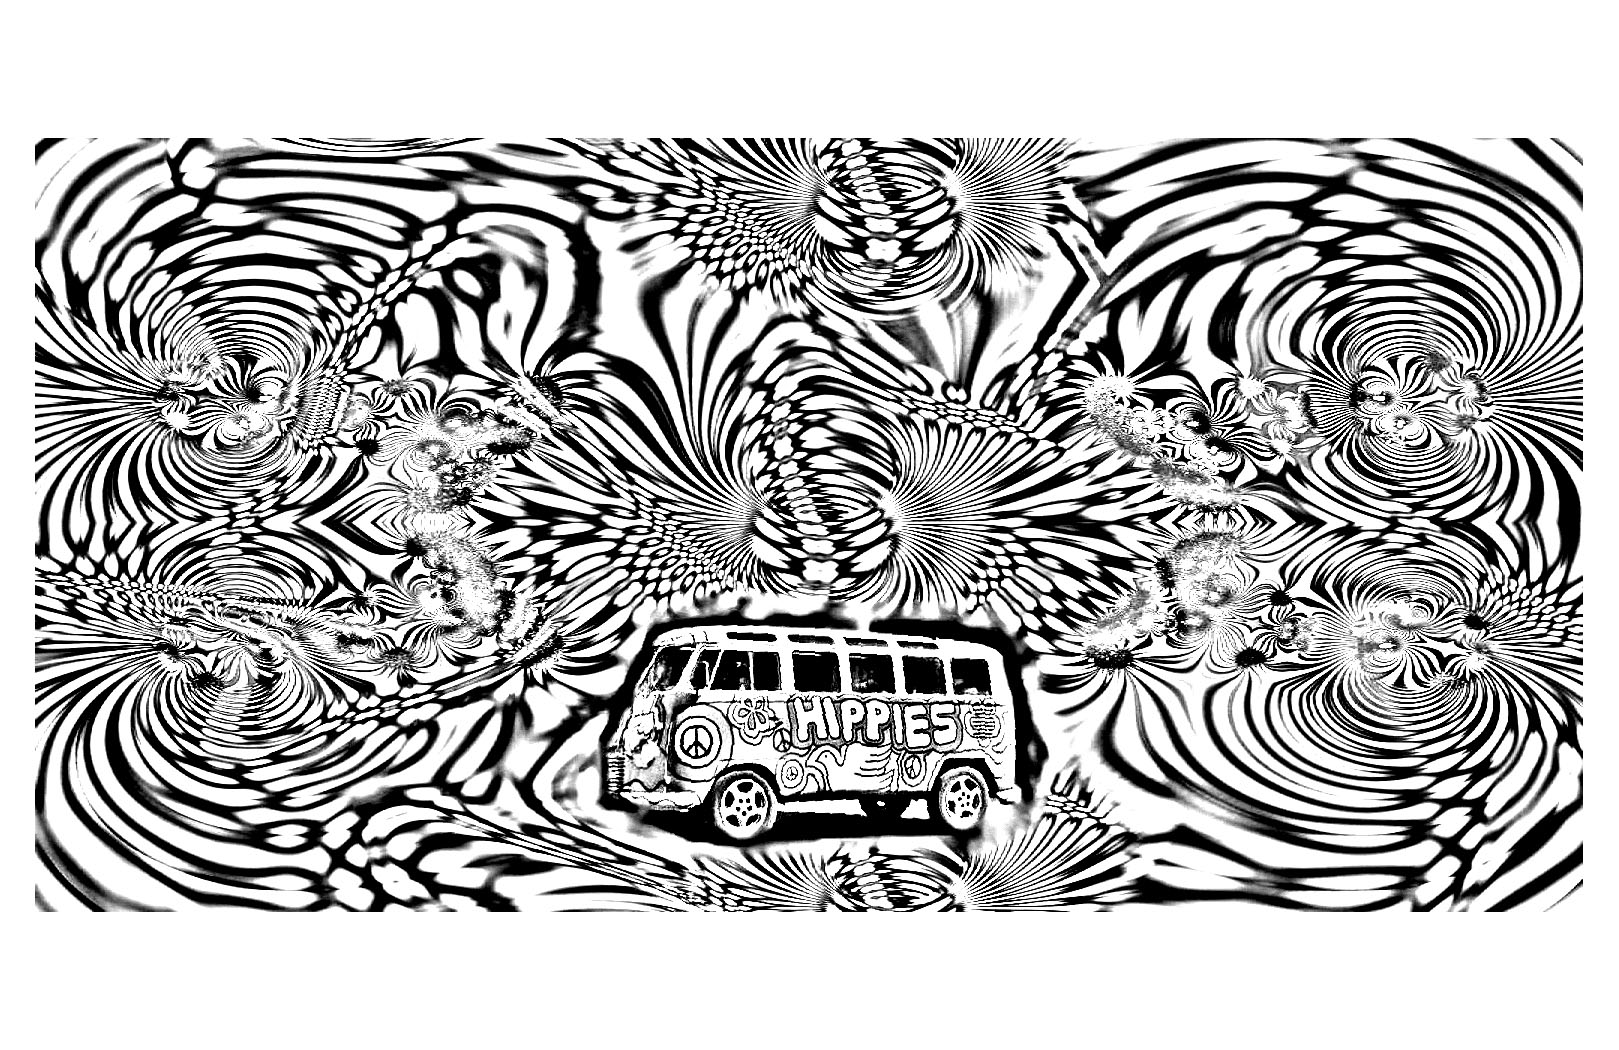 Typischer Bus der 70er Jahre inmitten eines psychedelischen und hypnotischen Himmels